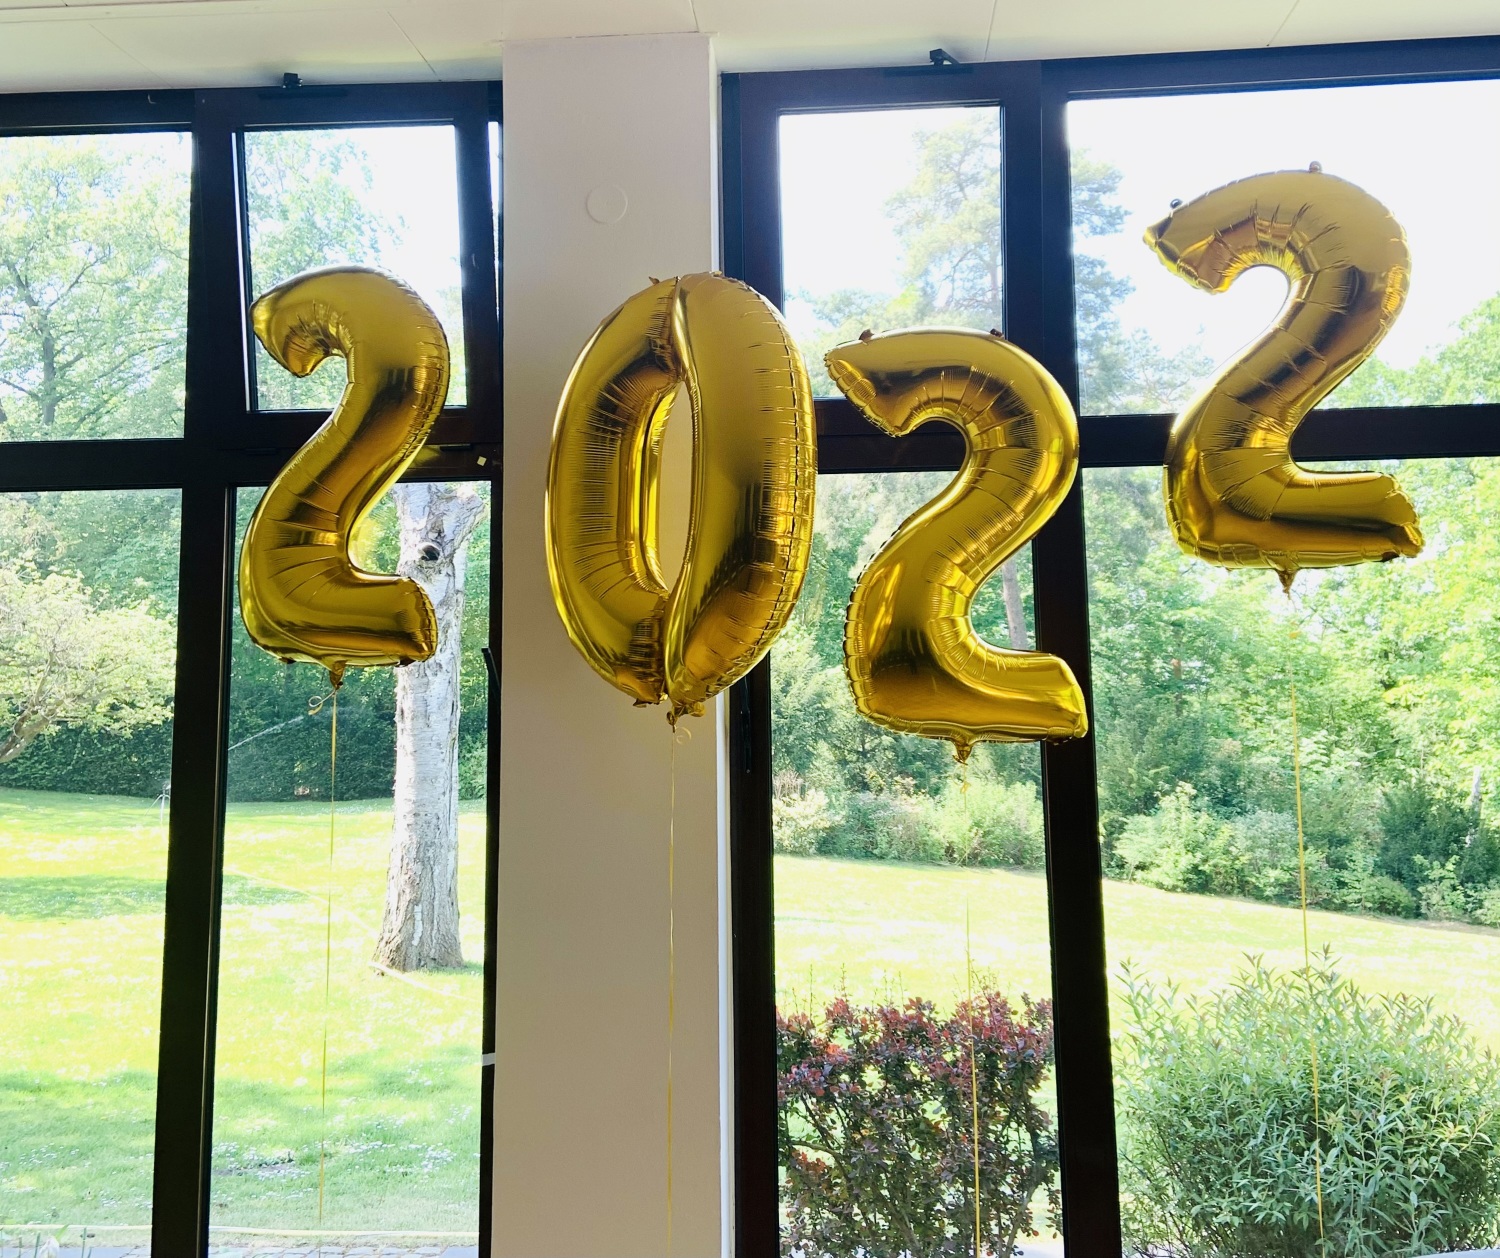 Jahr 2022 in Zahlen als Luftballon